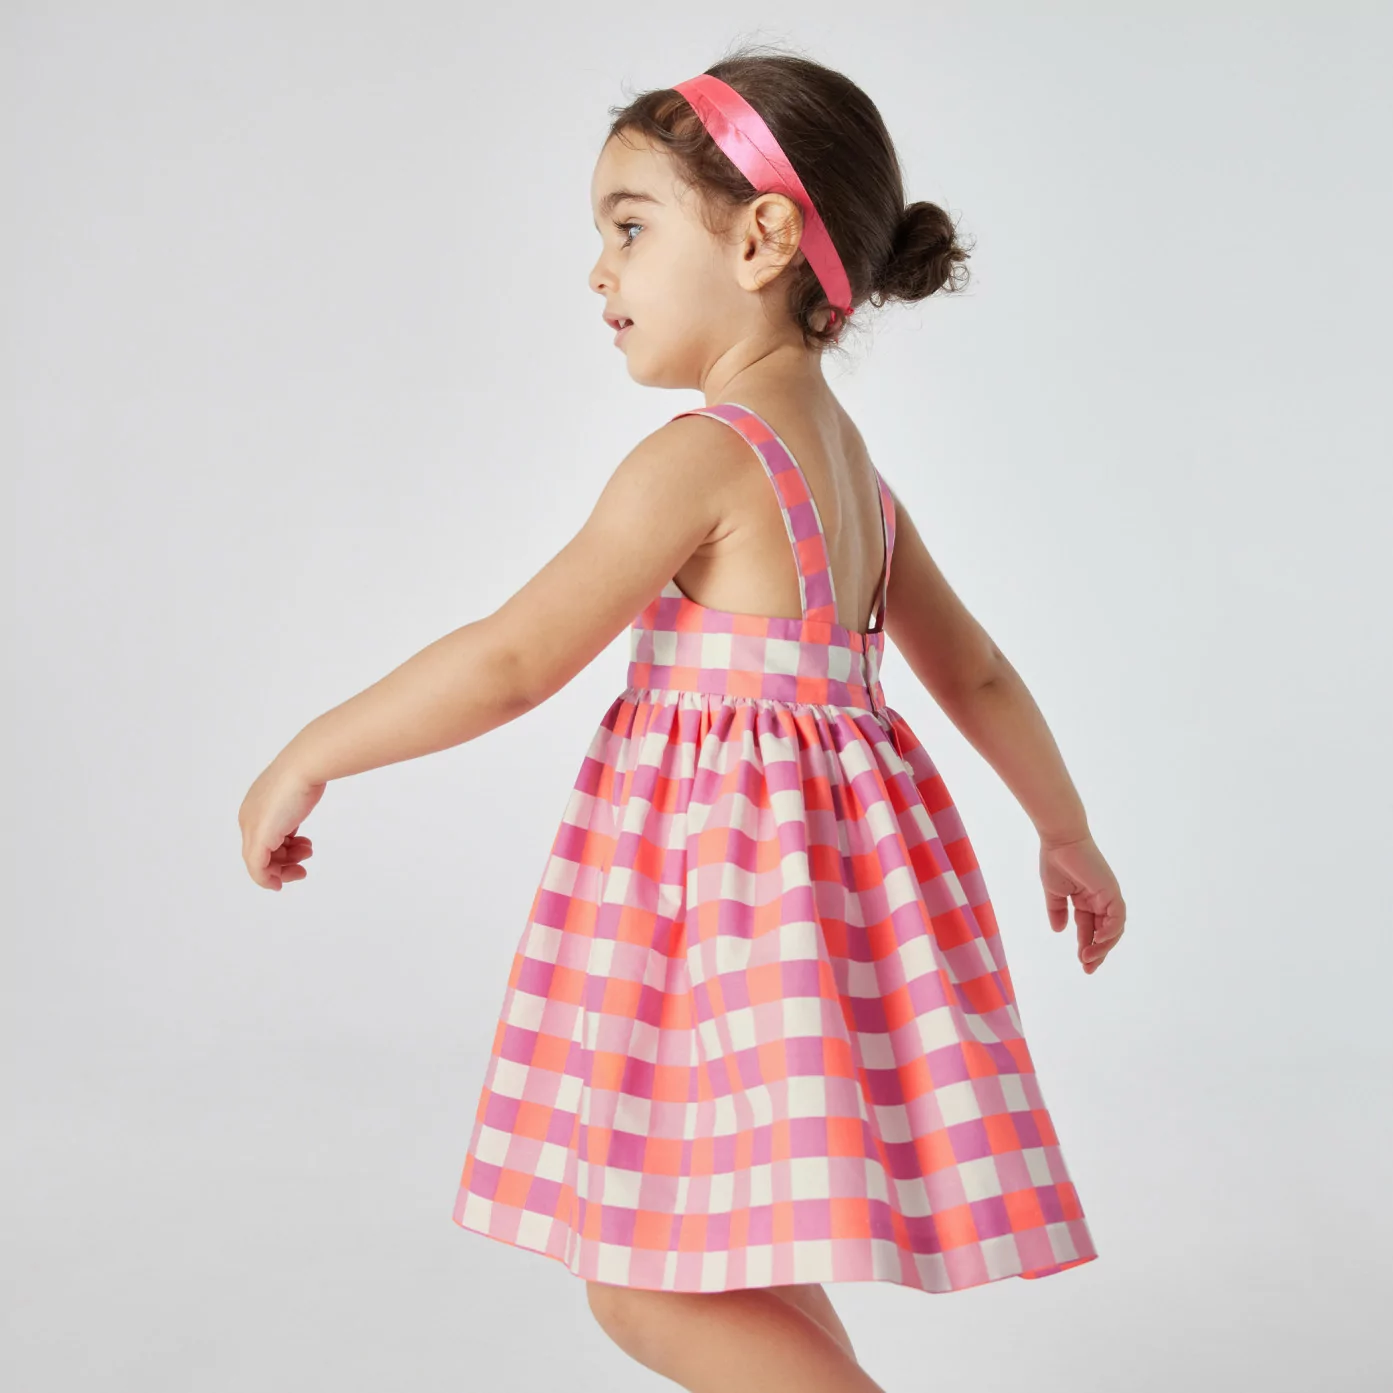 Toddler girl gingham dress